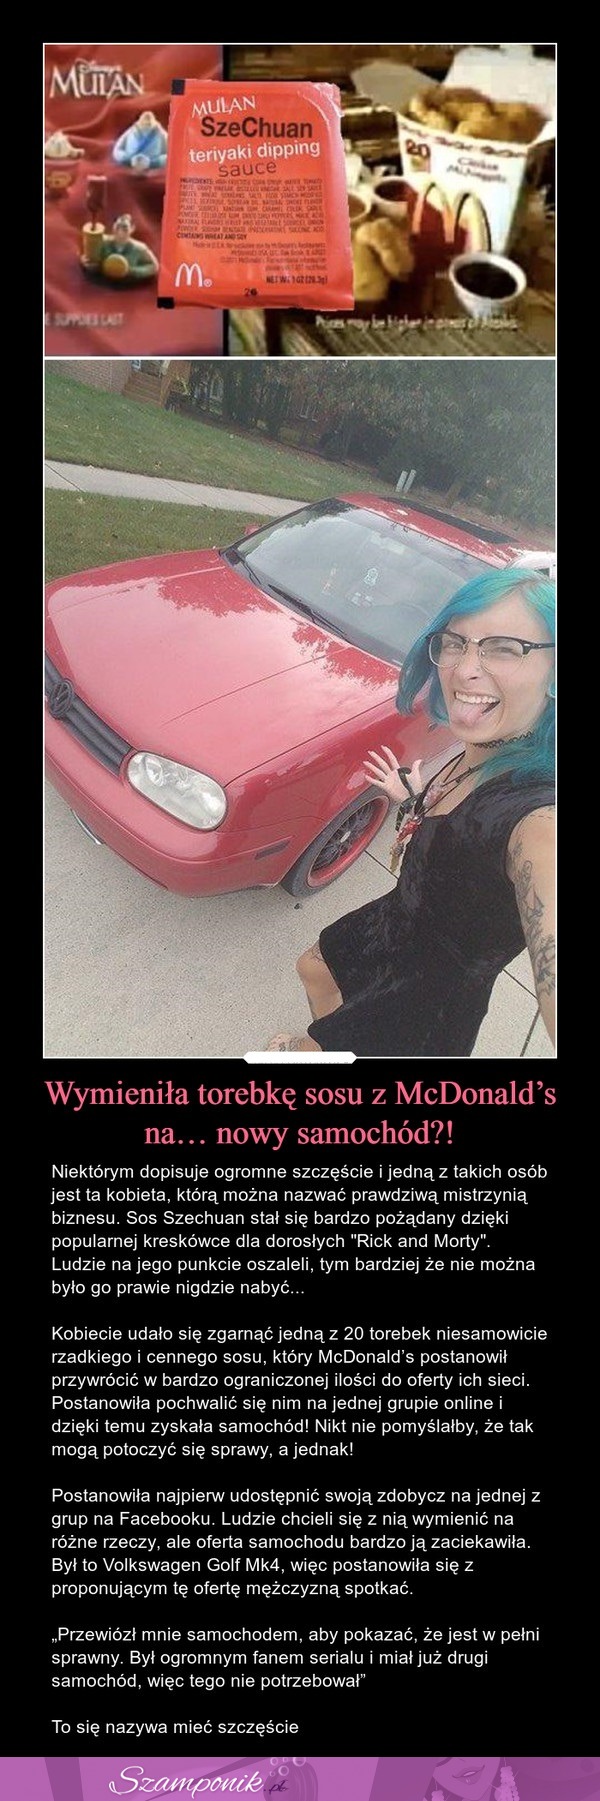 Wymieniła torebkę sosu z McDonald's na nowy samochód!